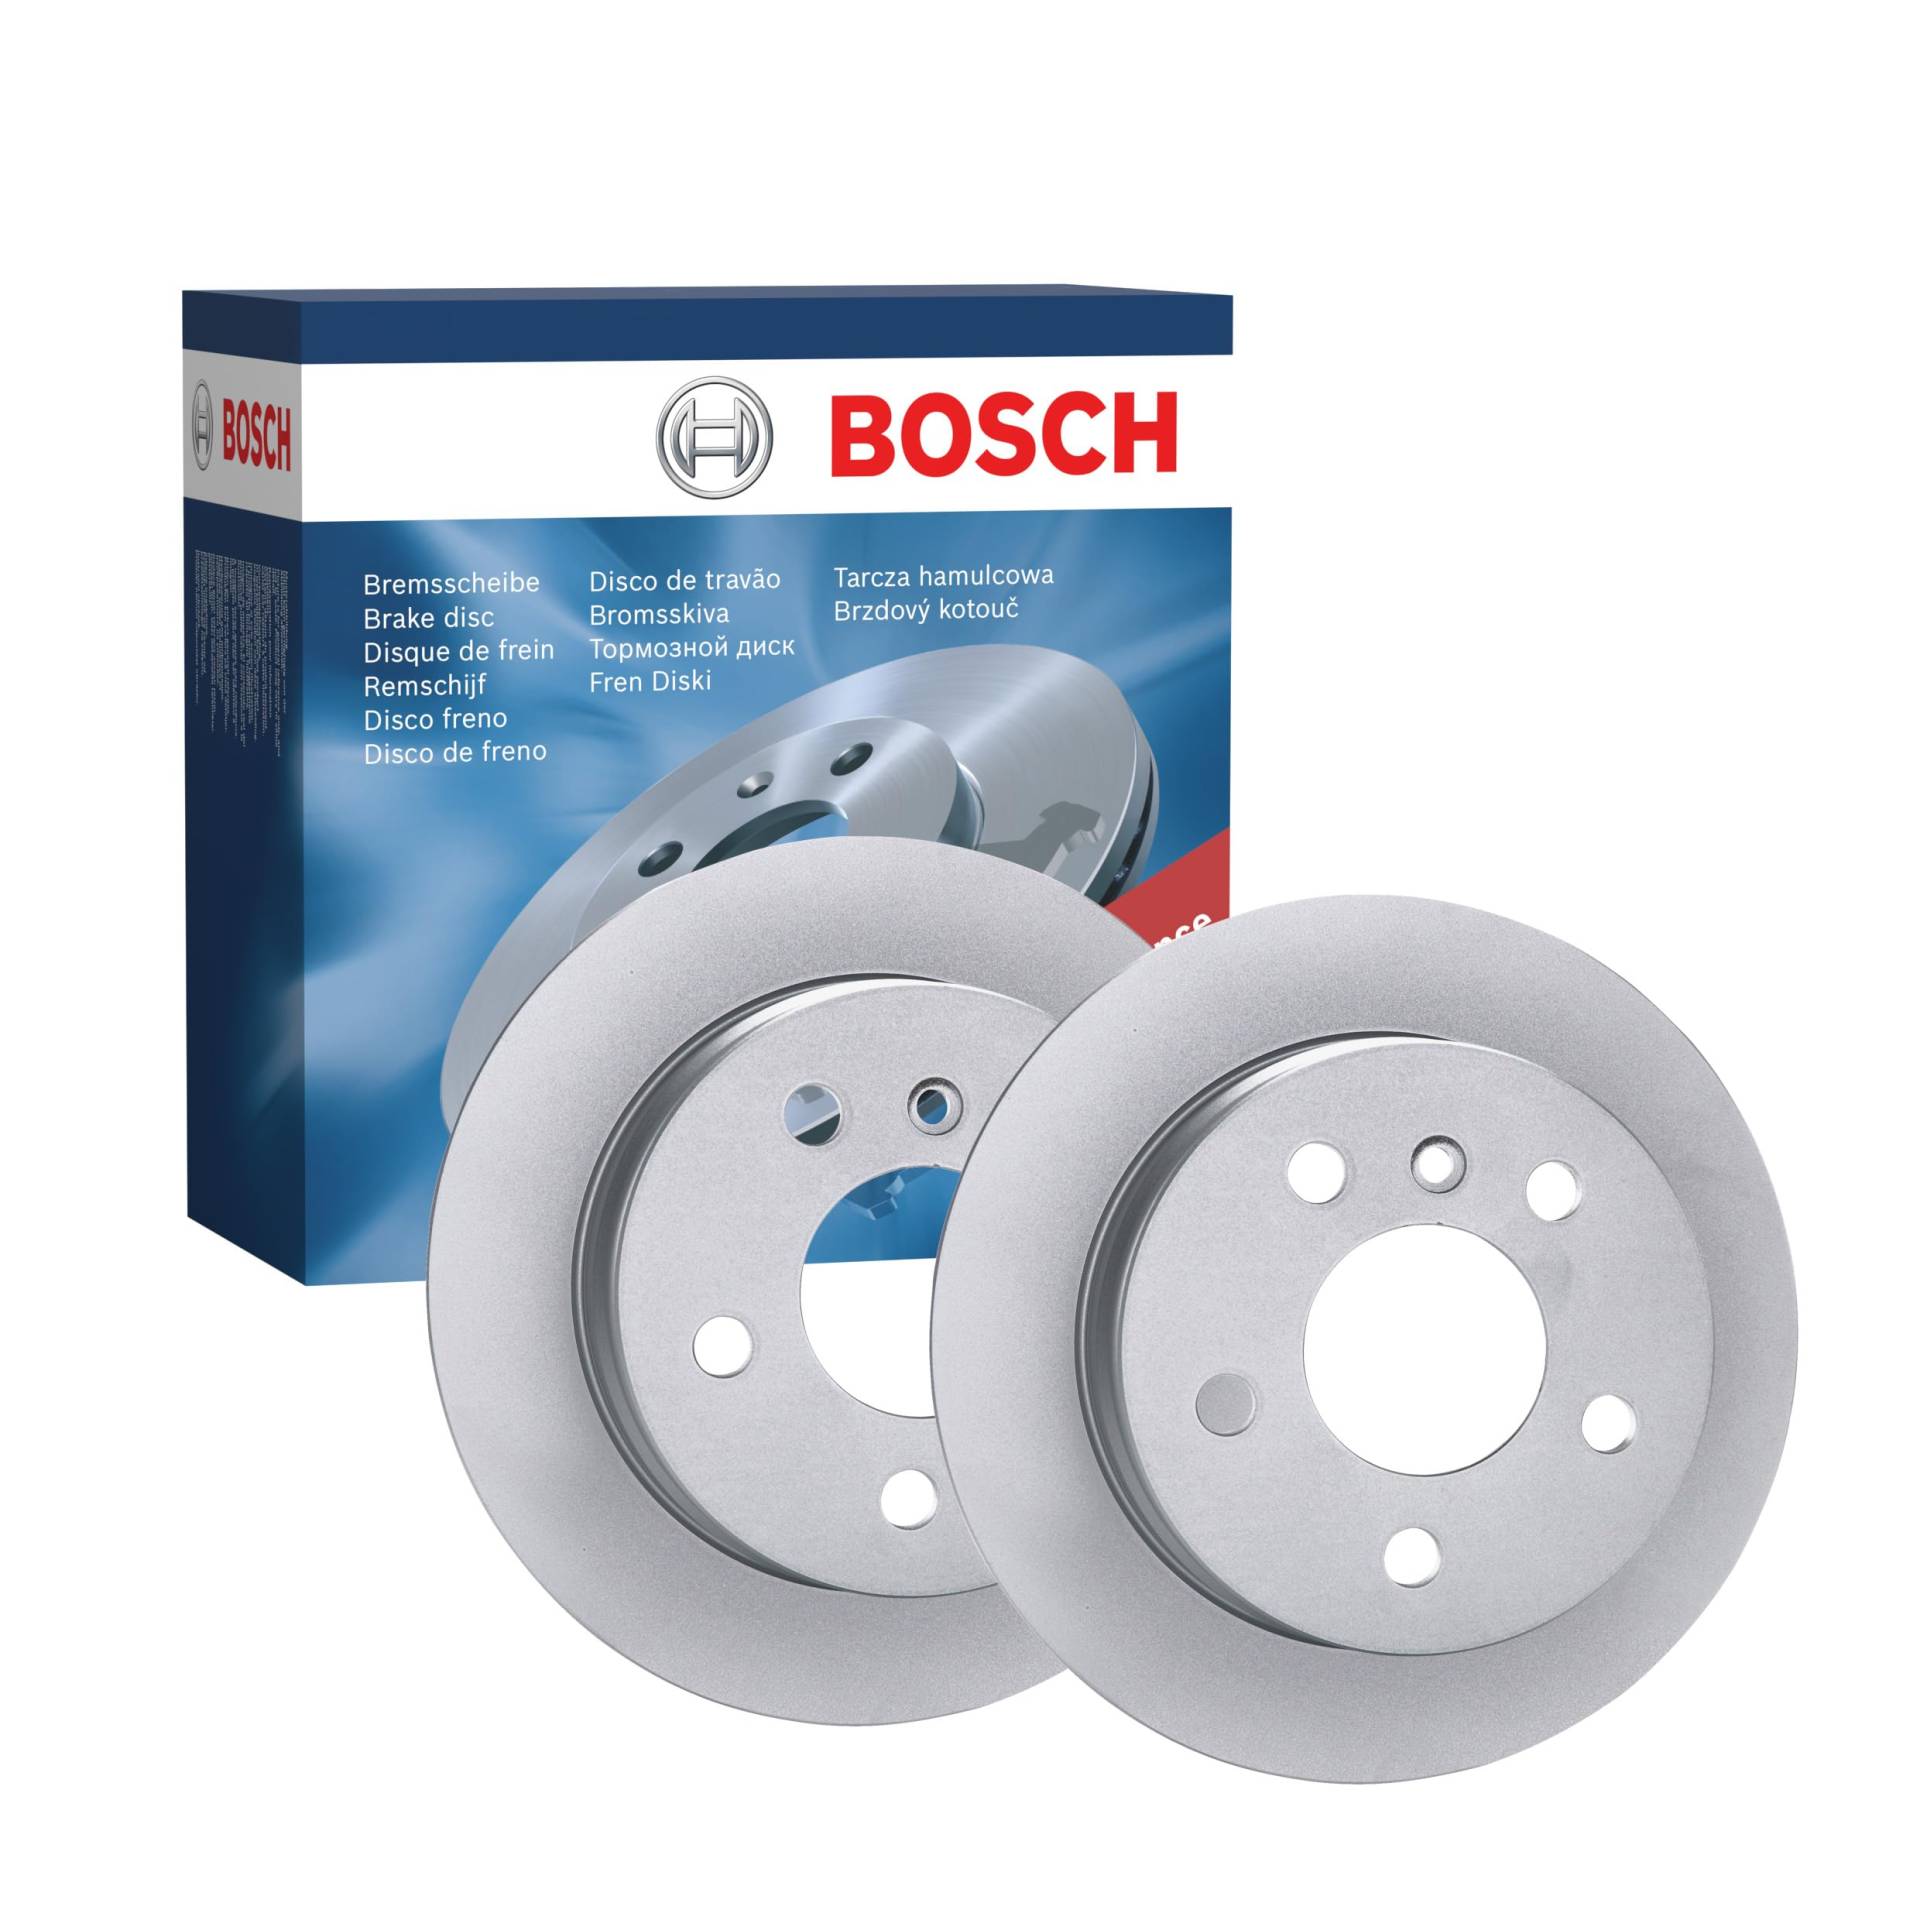 Bosch BD1101 Bremsscheiben - Hinterachse - ECE-R90 Zertifizierung - zwei Bremsscheiben pro Set von Bosch Automotive